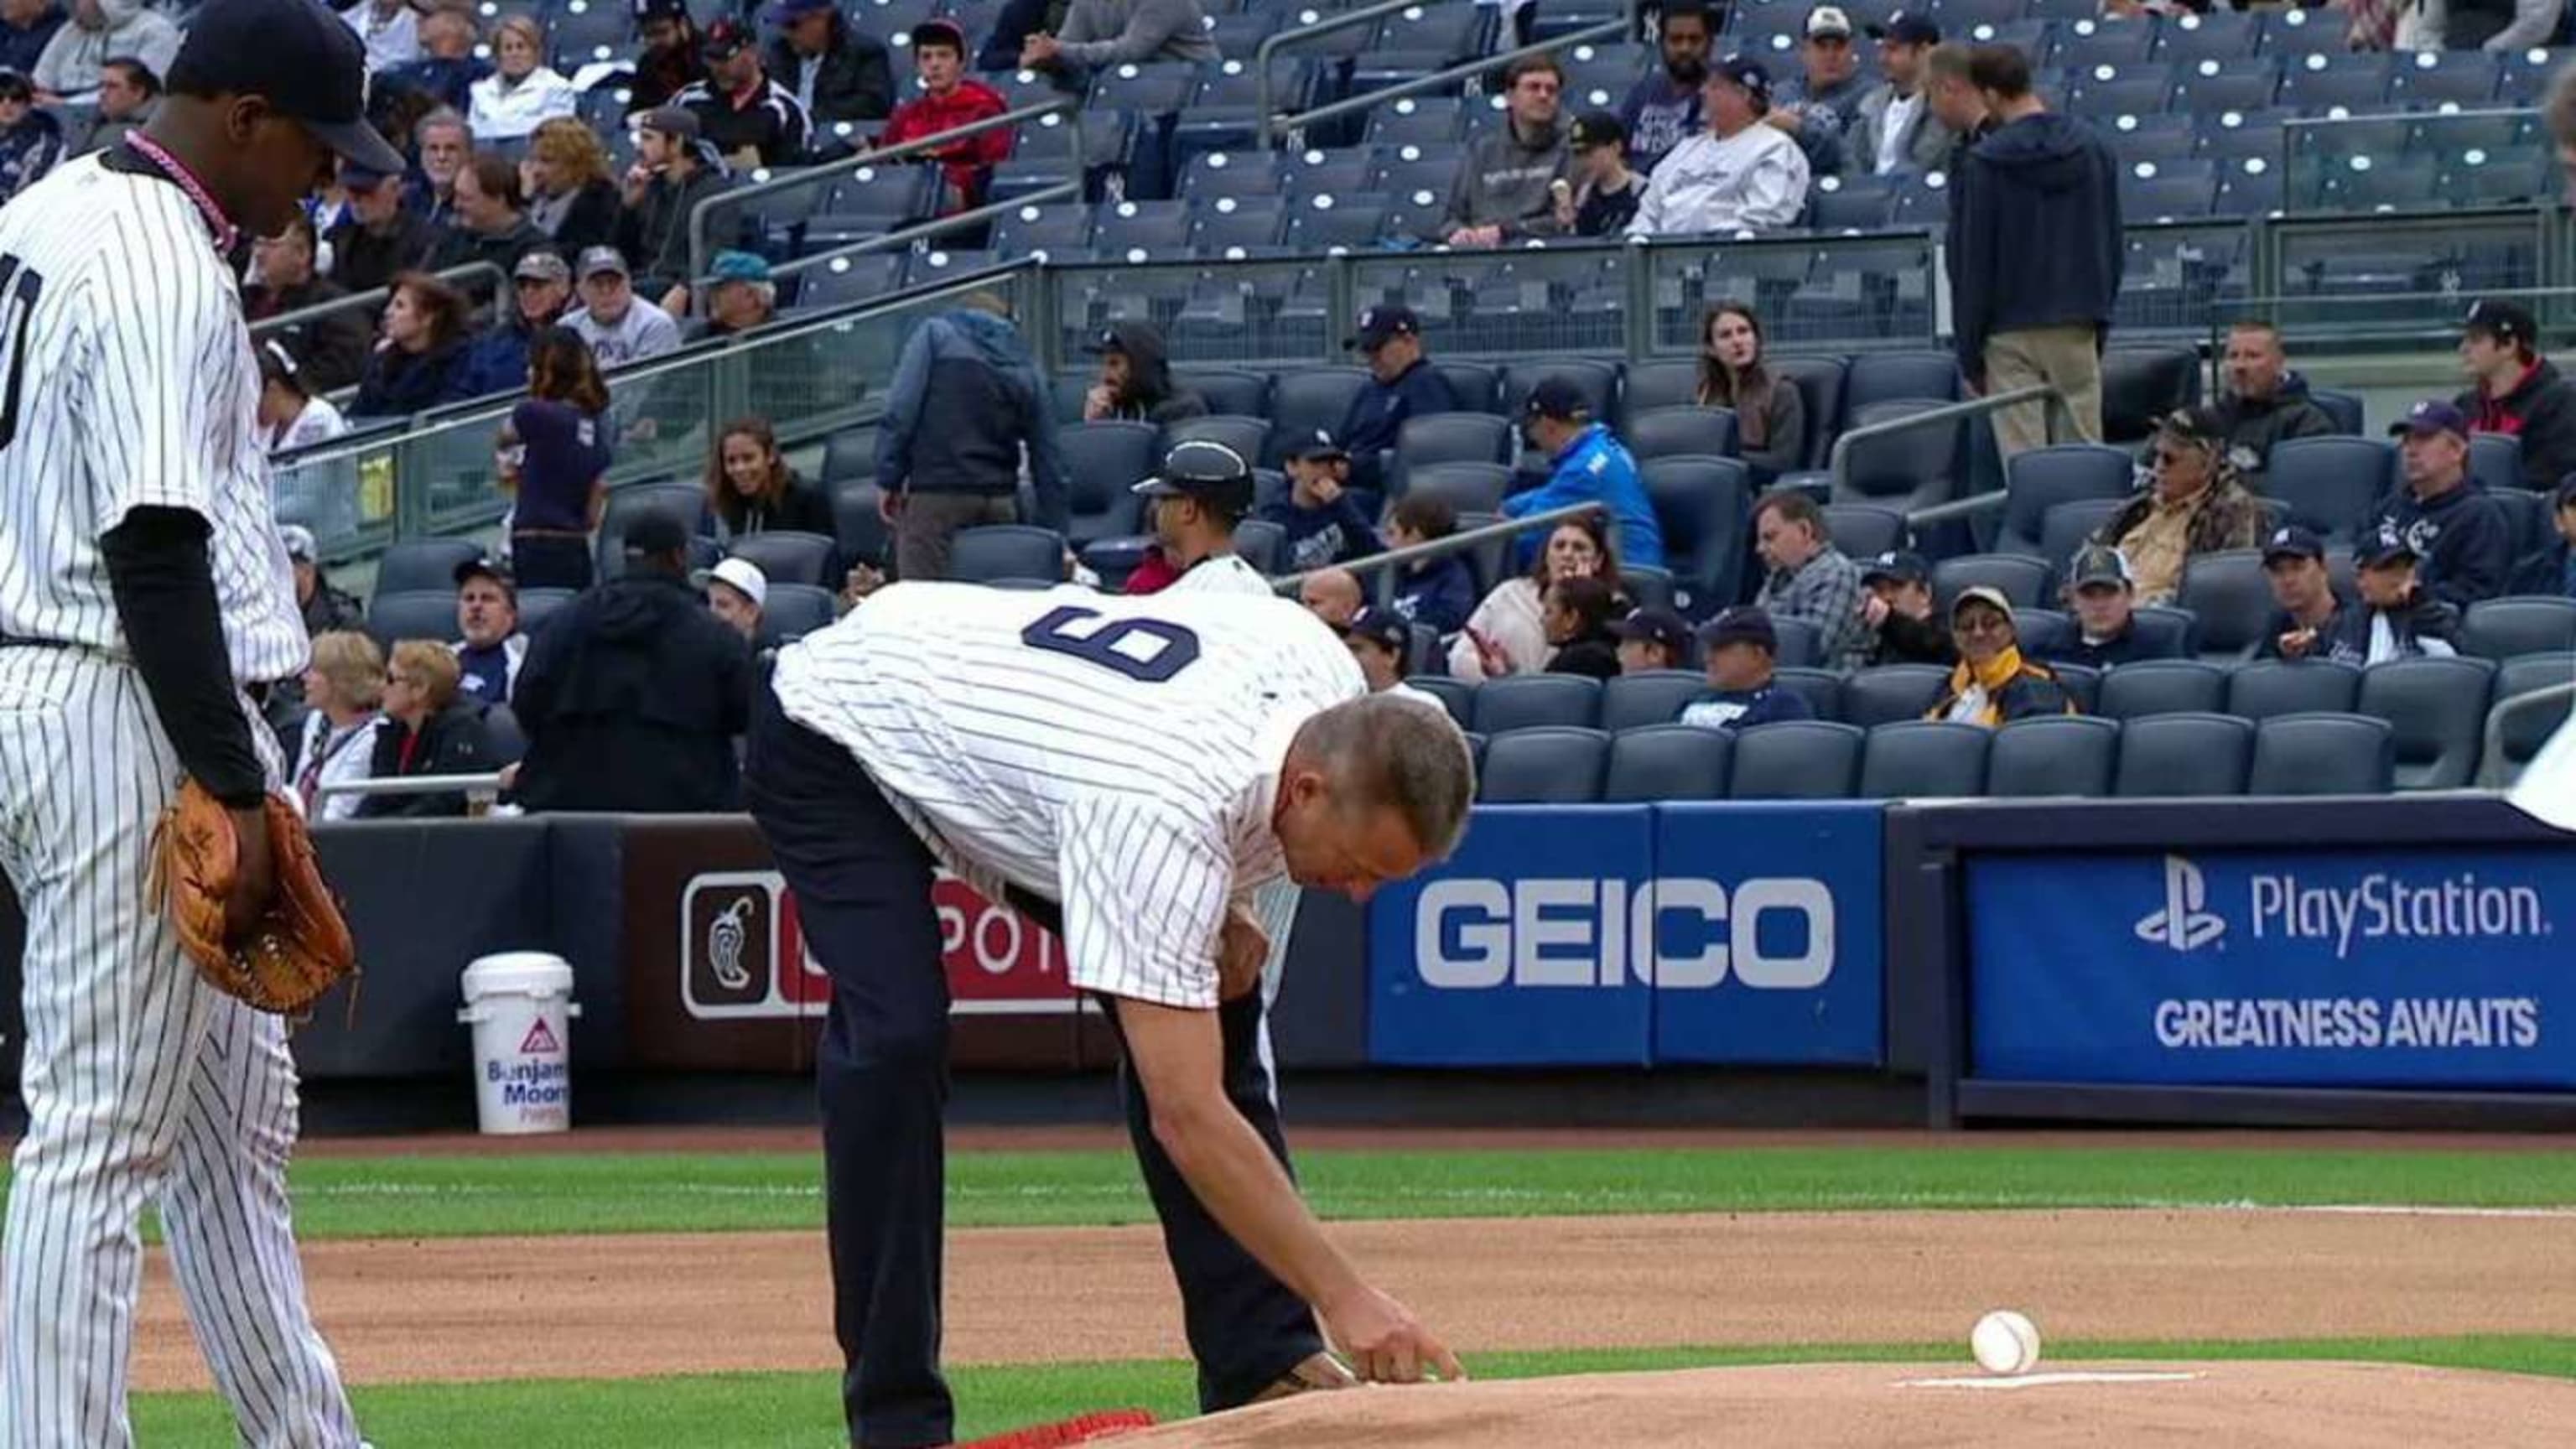 Yankees honor Maris' 61 home run season